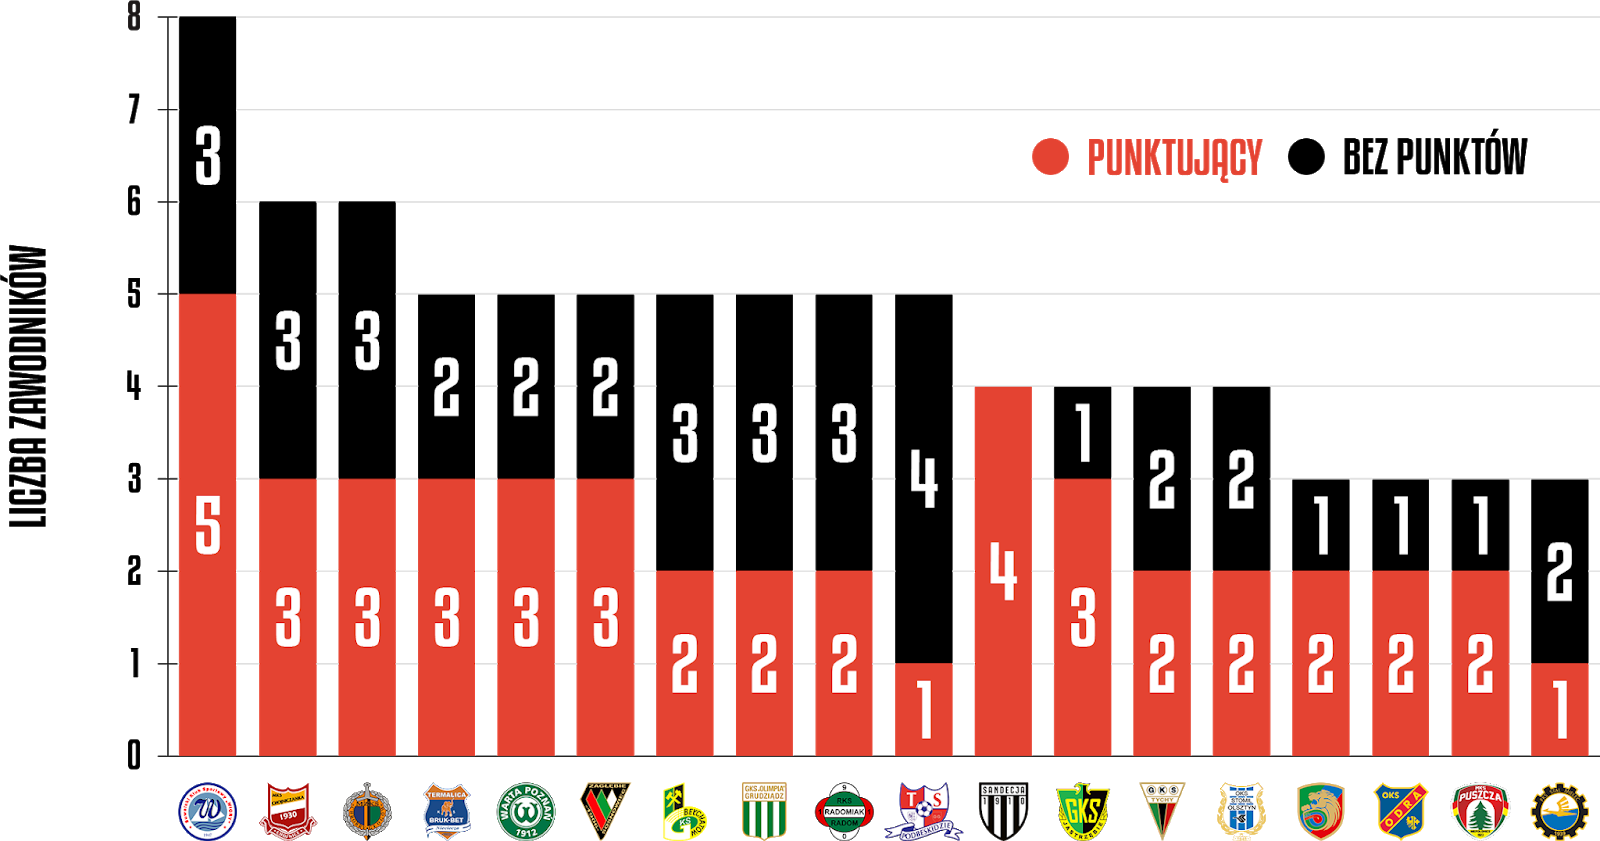 Liczba punktujących młodzieżowców, którzy zagrali w tym sezonie Fortuna 1 Ligi<br><br>Źródło: Opracowanie własne na podstawie 90minut.pl<br><br>graf. Bartosz Urban